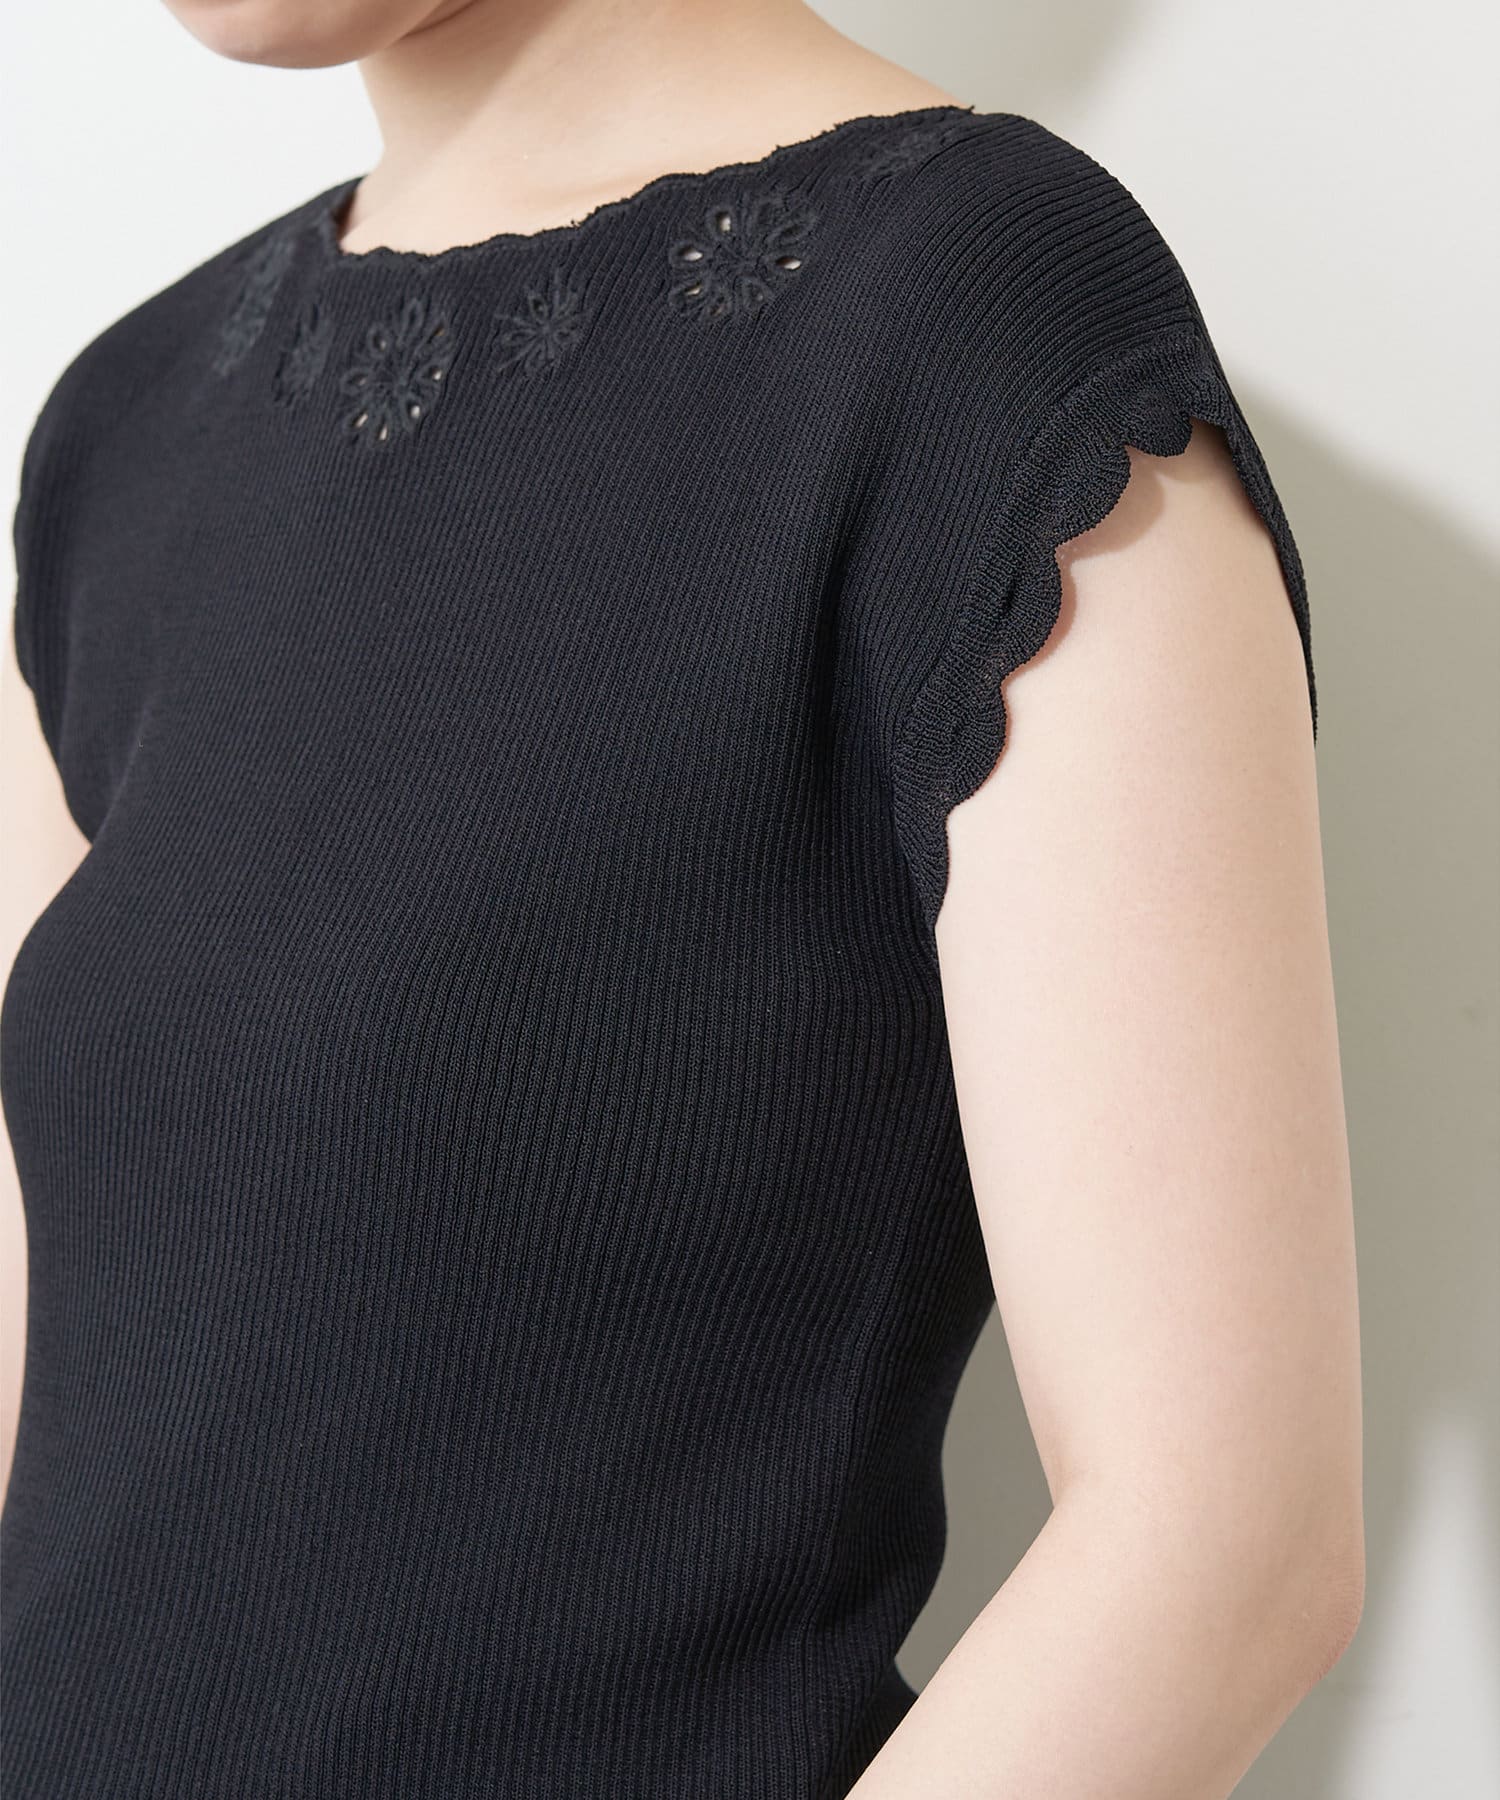 natural couture(ナチュラルクチュール) 衿ぐりお花刺繍強撚リブニット